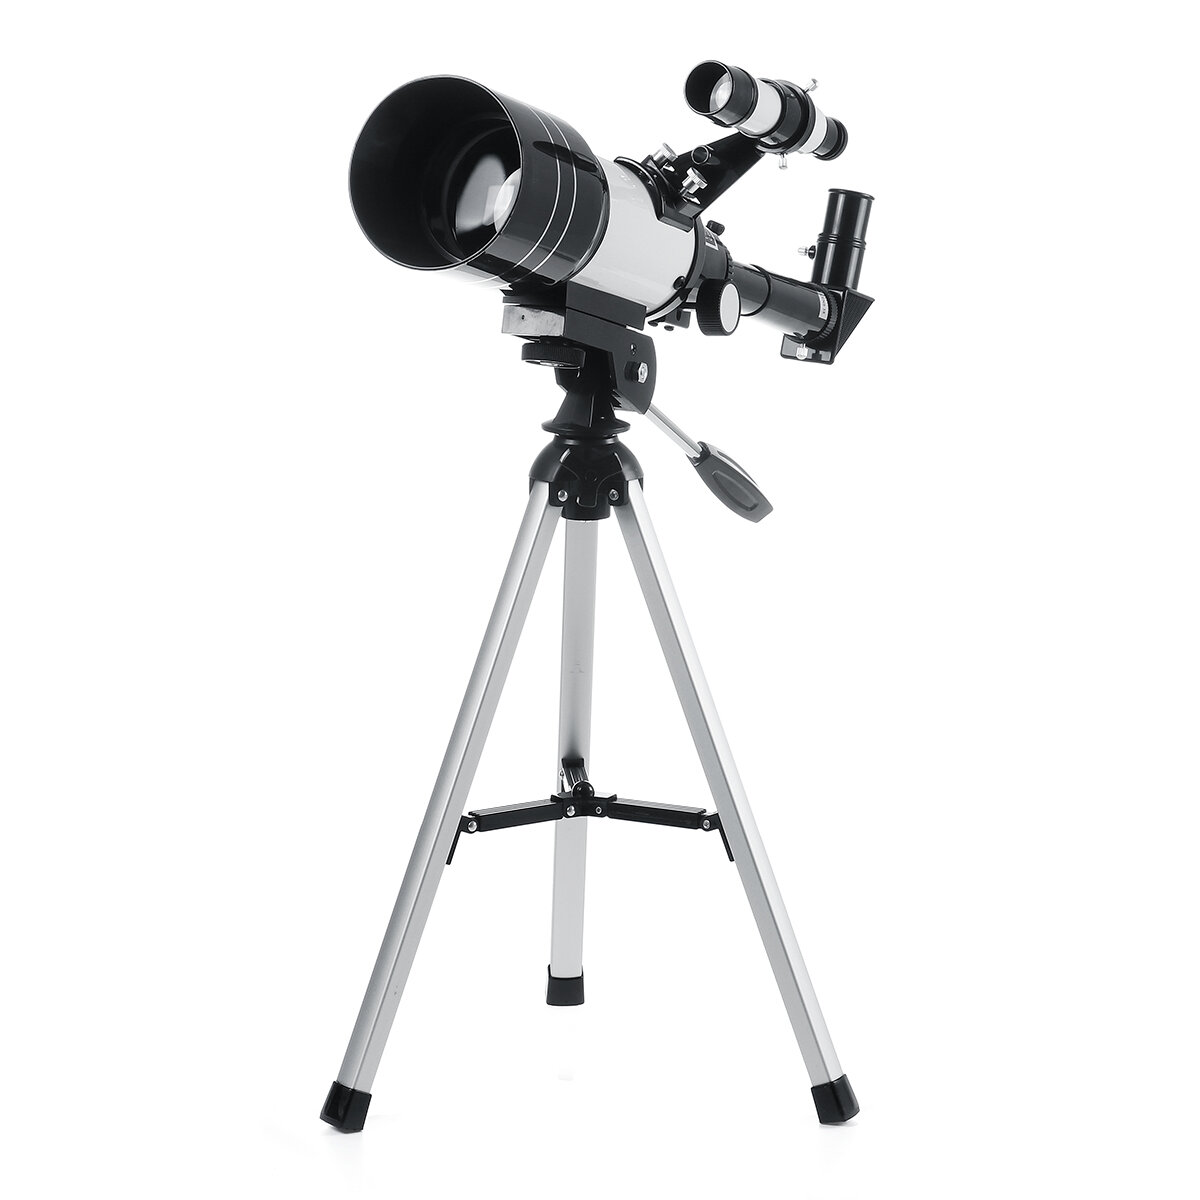 150x70mm Astronomik Teleskop, HD Görüntüleme ile Uzay ve Ay'ı İzleme, Açık Hava ve Ev Kullanımı için İdeal.